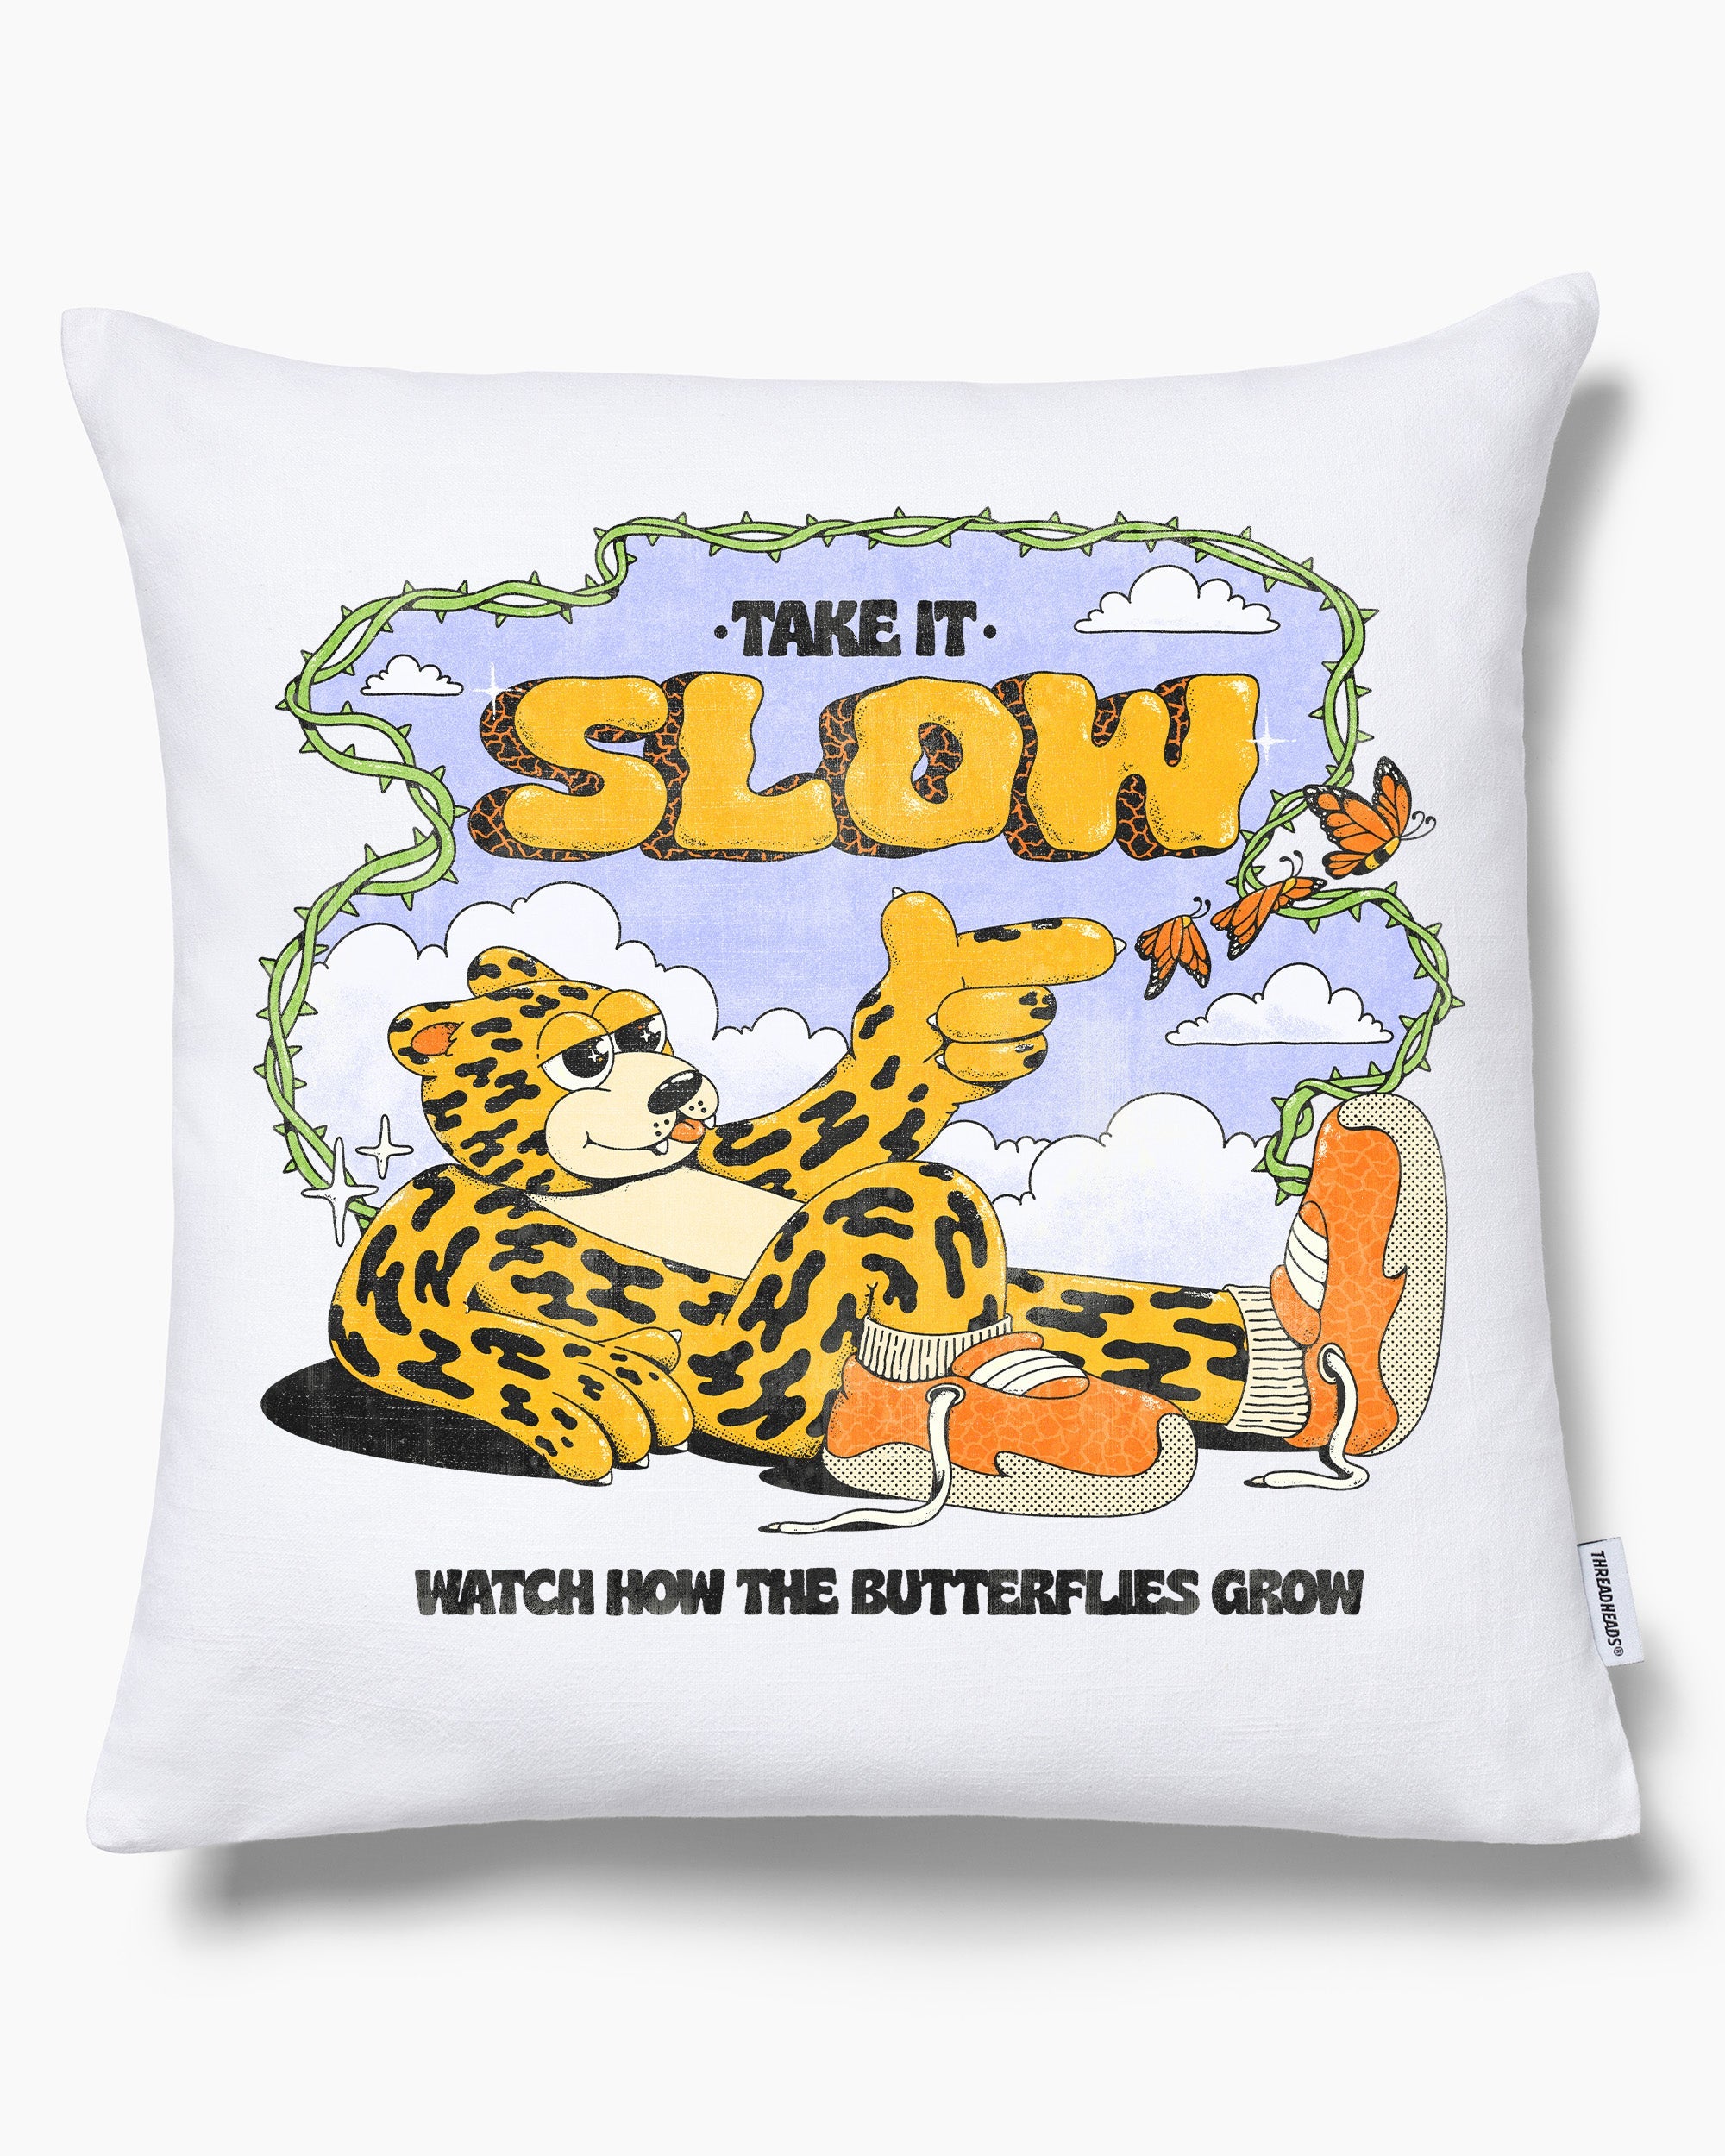 Take It Slow Cushion Australia Online White